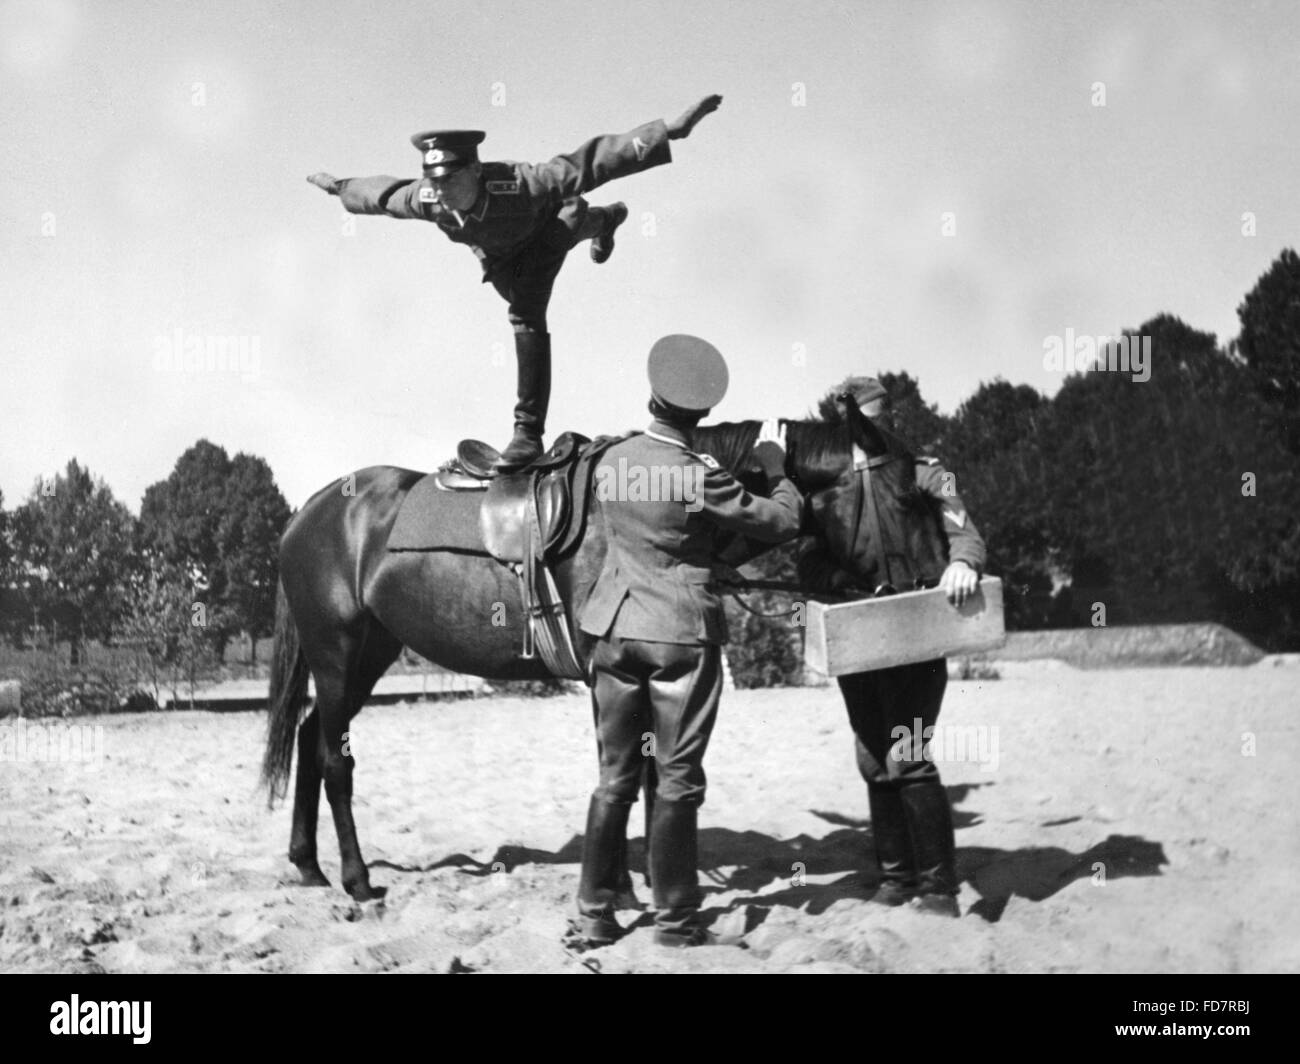 Kavallerie Der Wehrmacht 1936 Stockfotografie Alamy